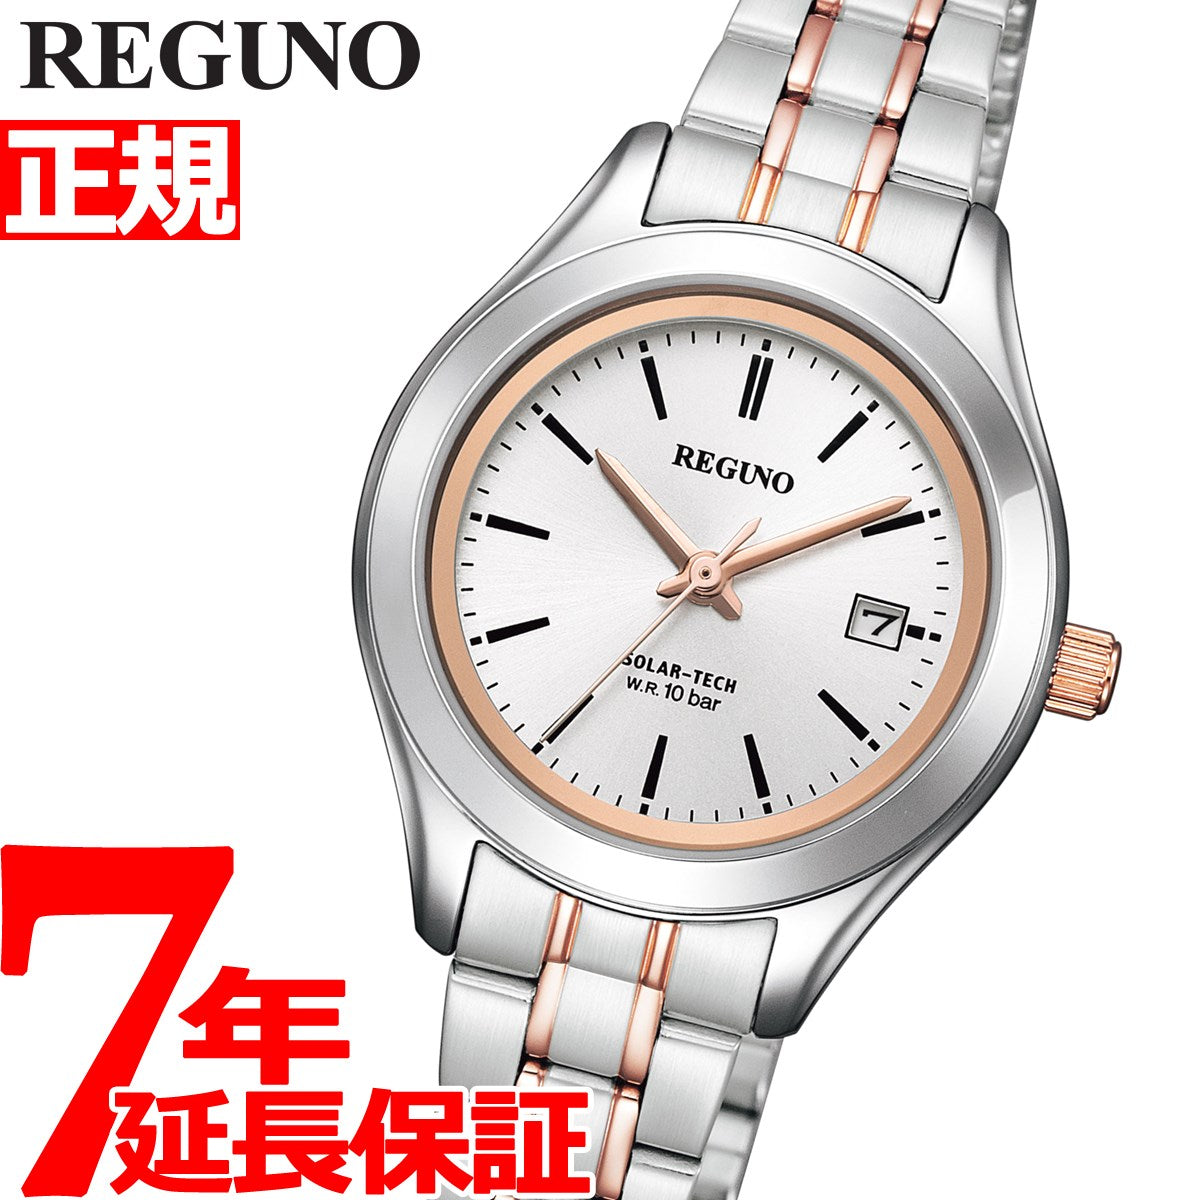 シチズン レグノ レディース 腕時計 ソーラー CITIZEN REGUNO スタンダードシリーズ シルバー KM4-139-91